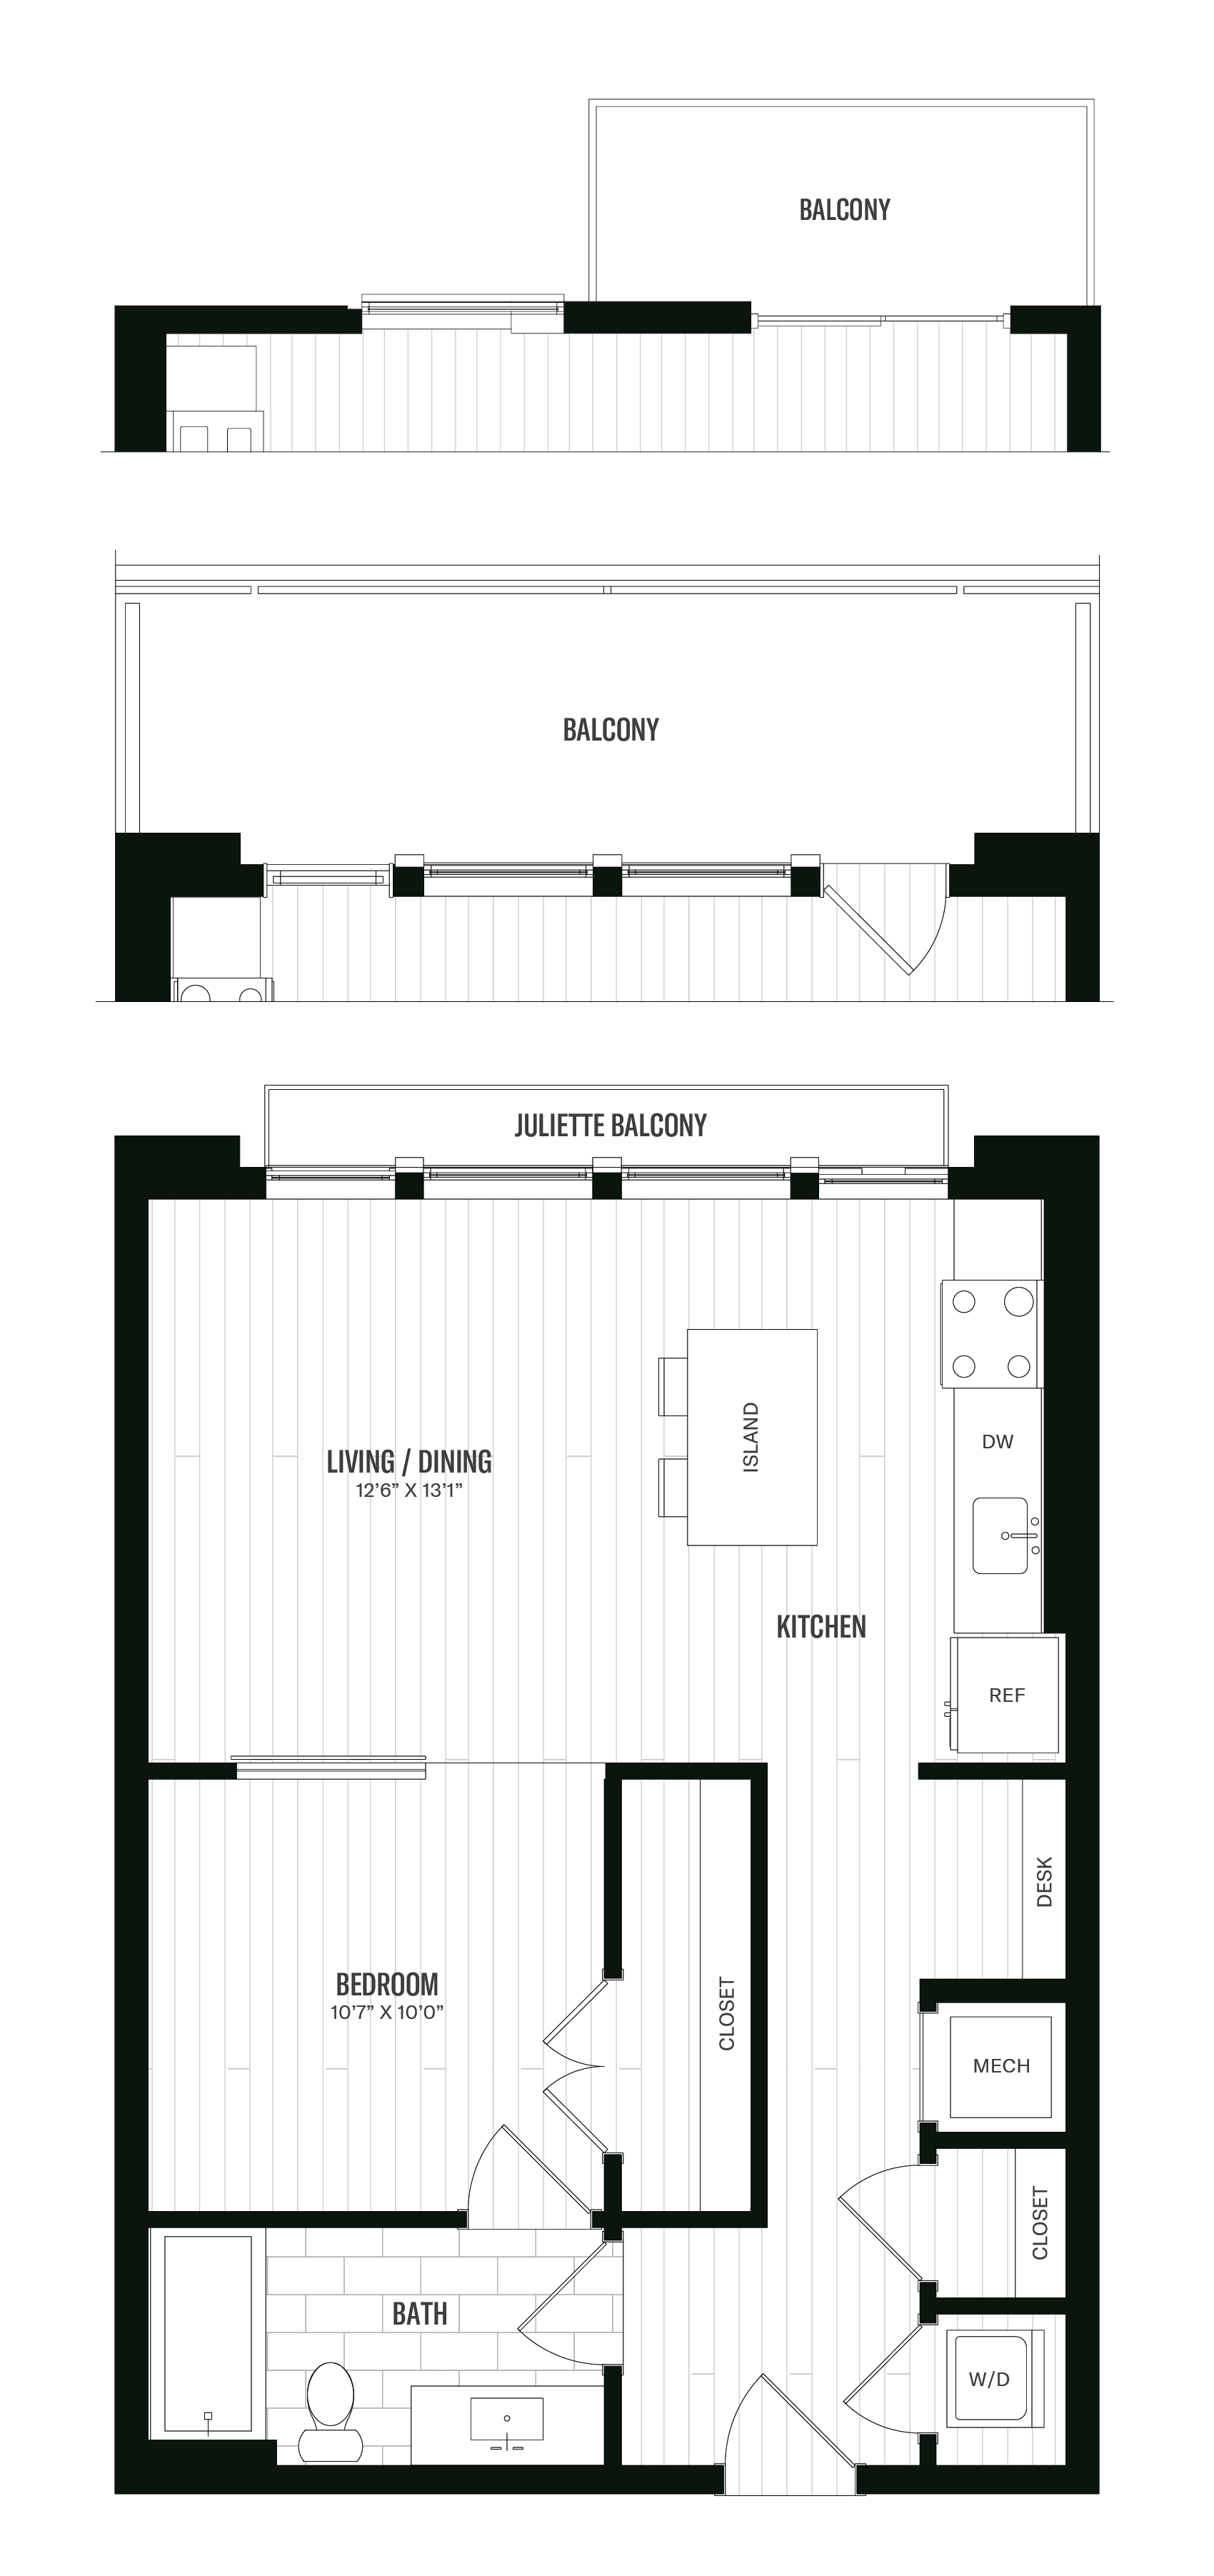 Floorplan image of unit 511